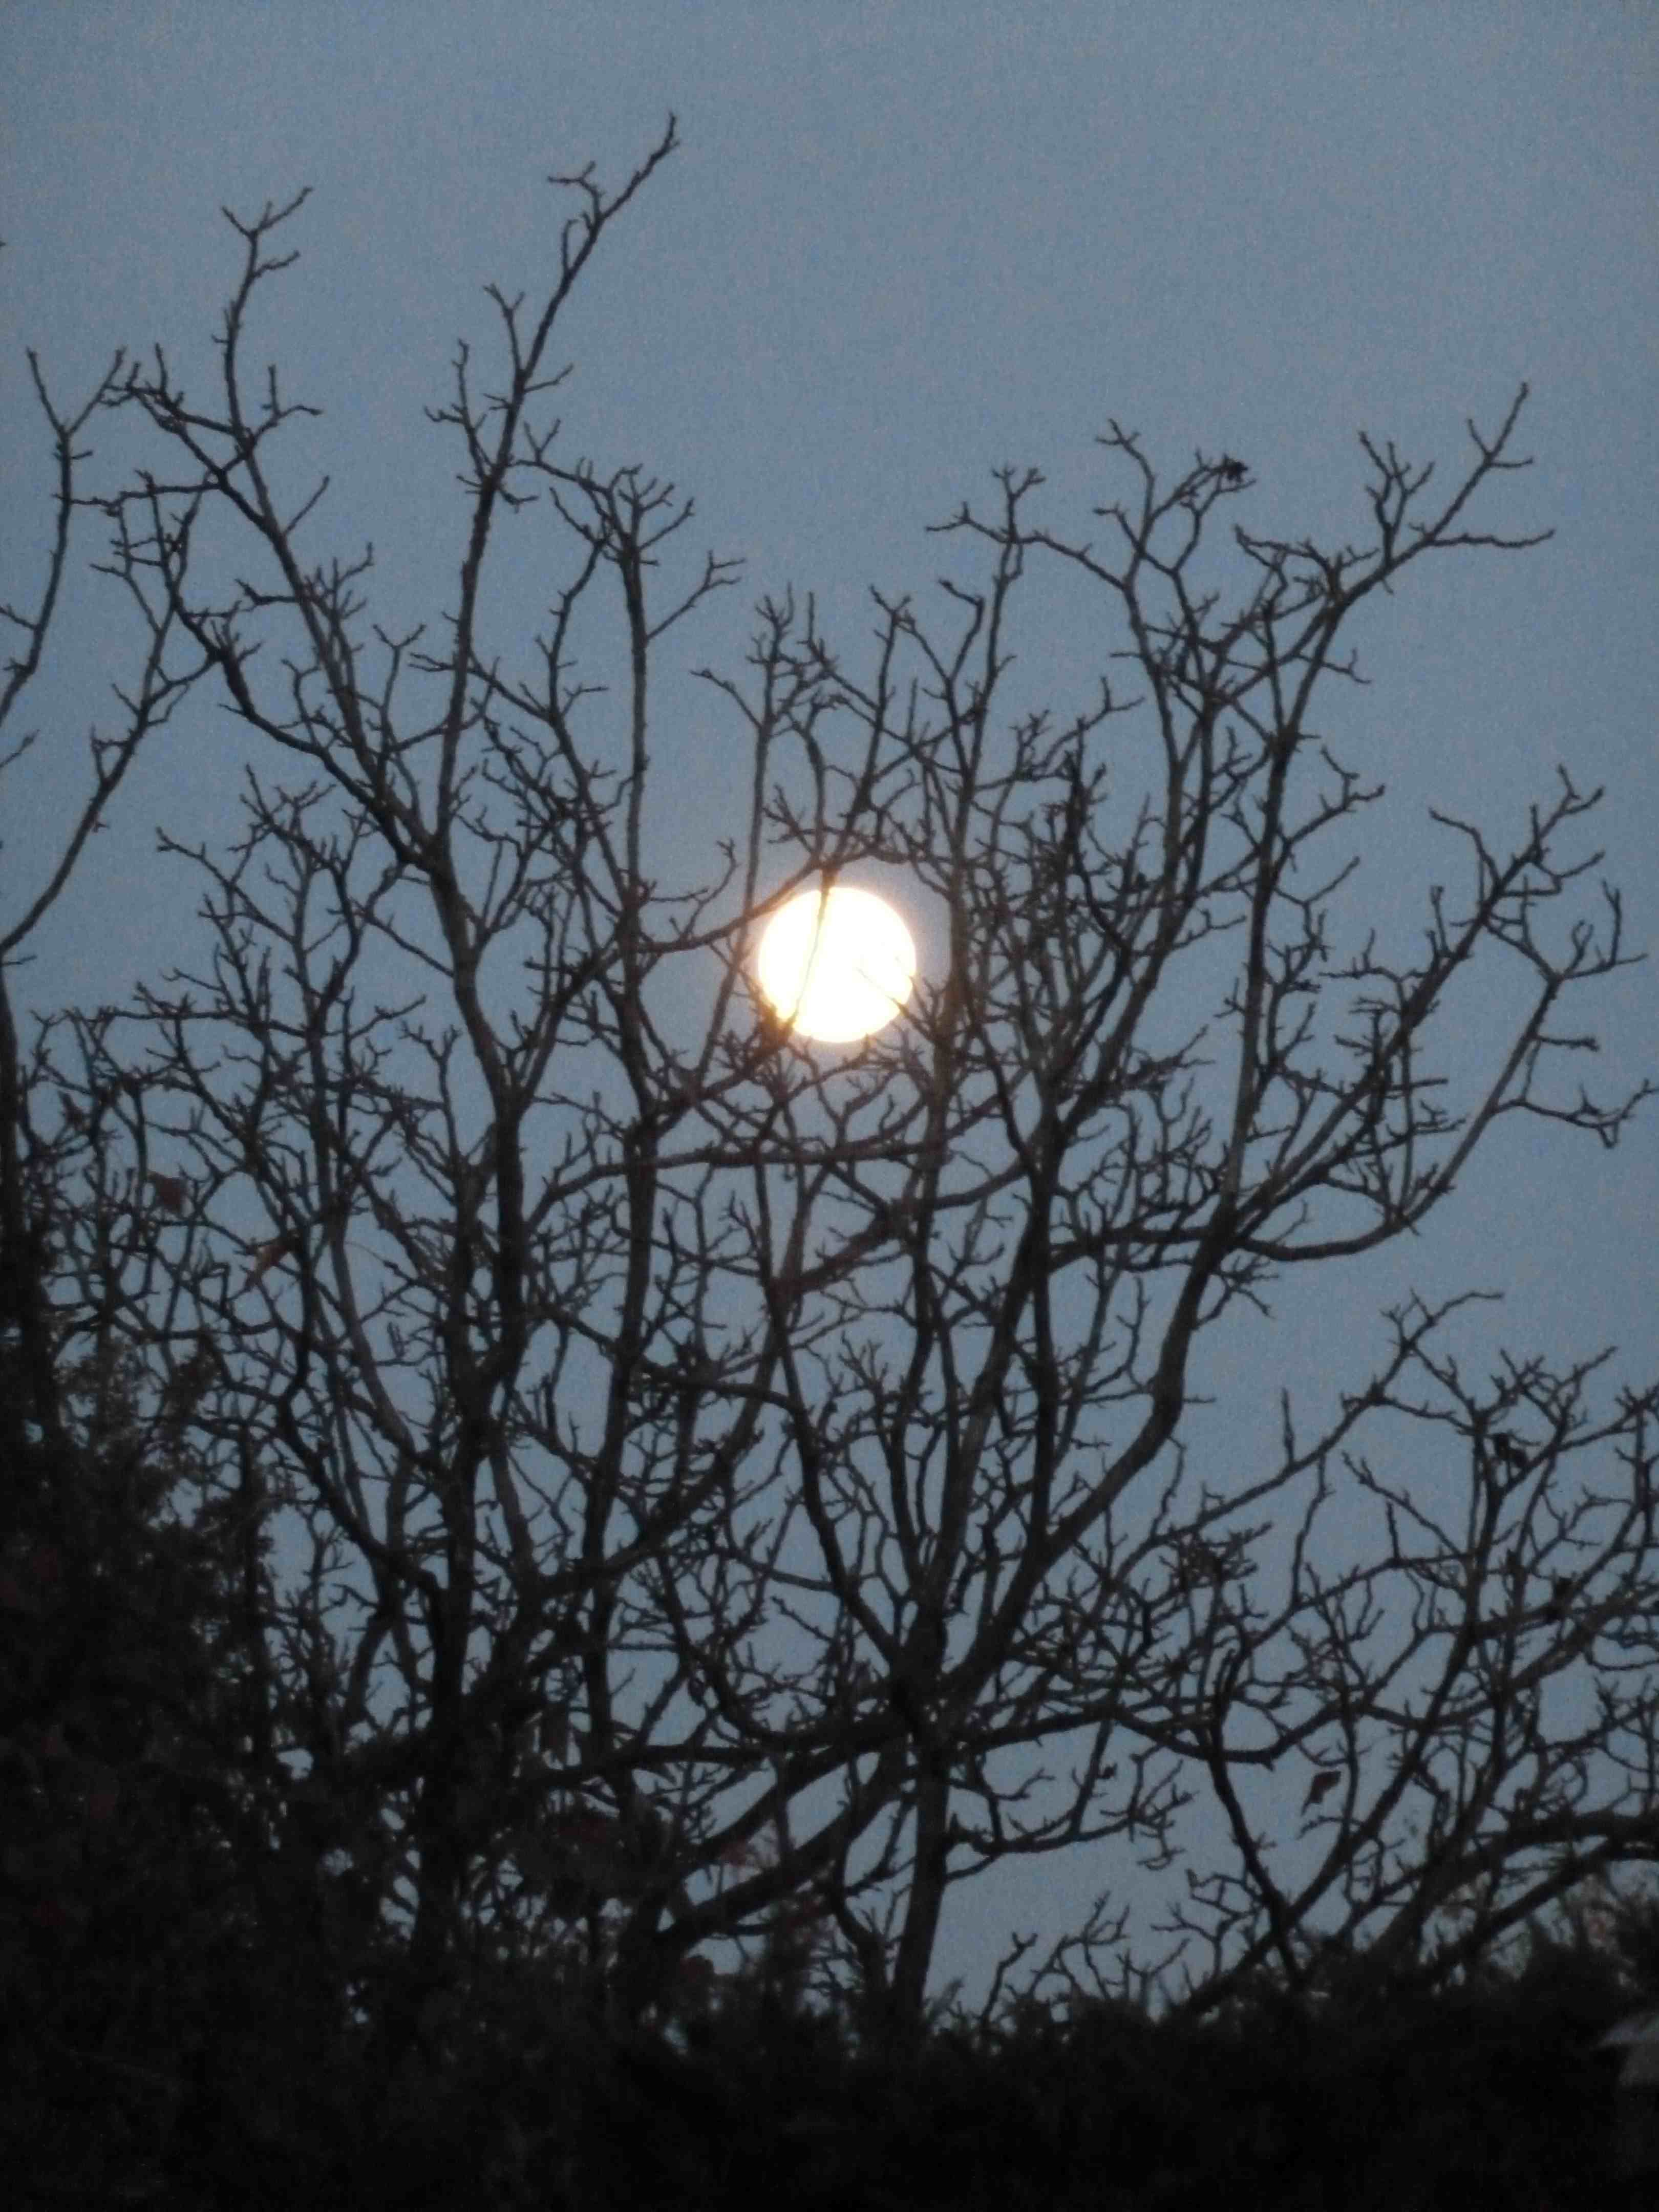 Morning full moon